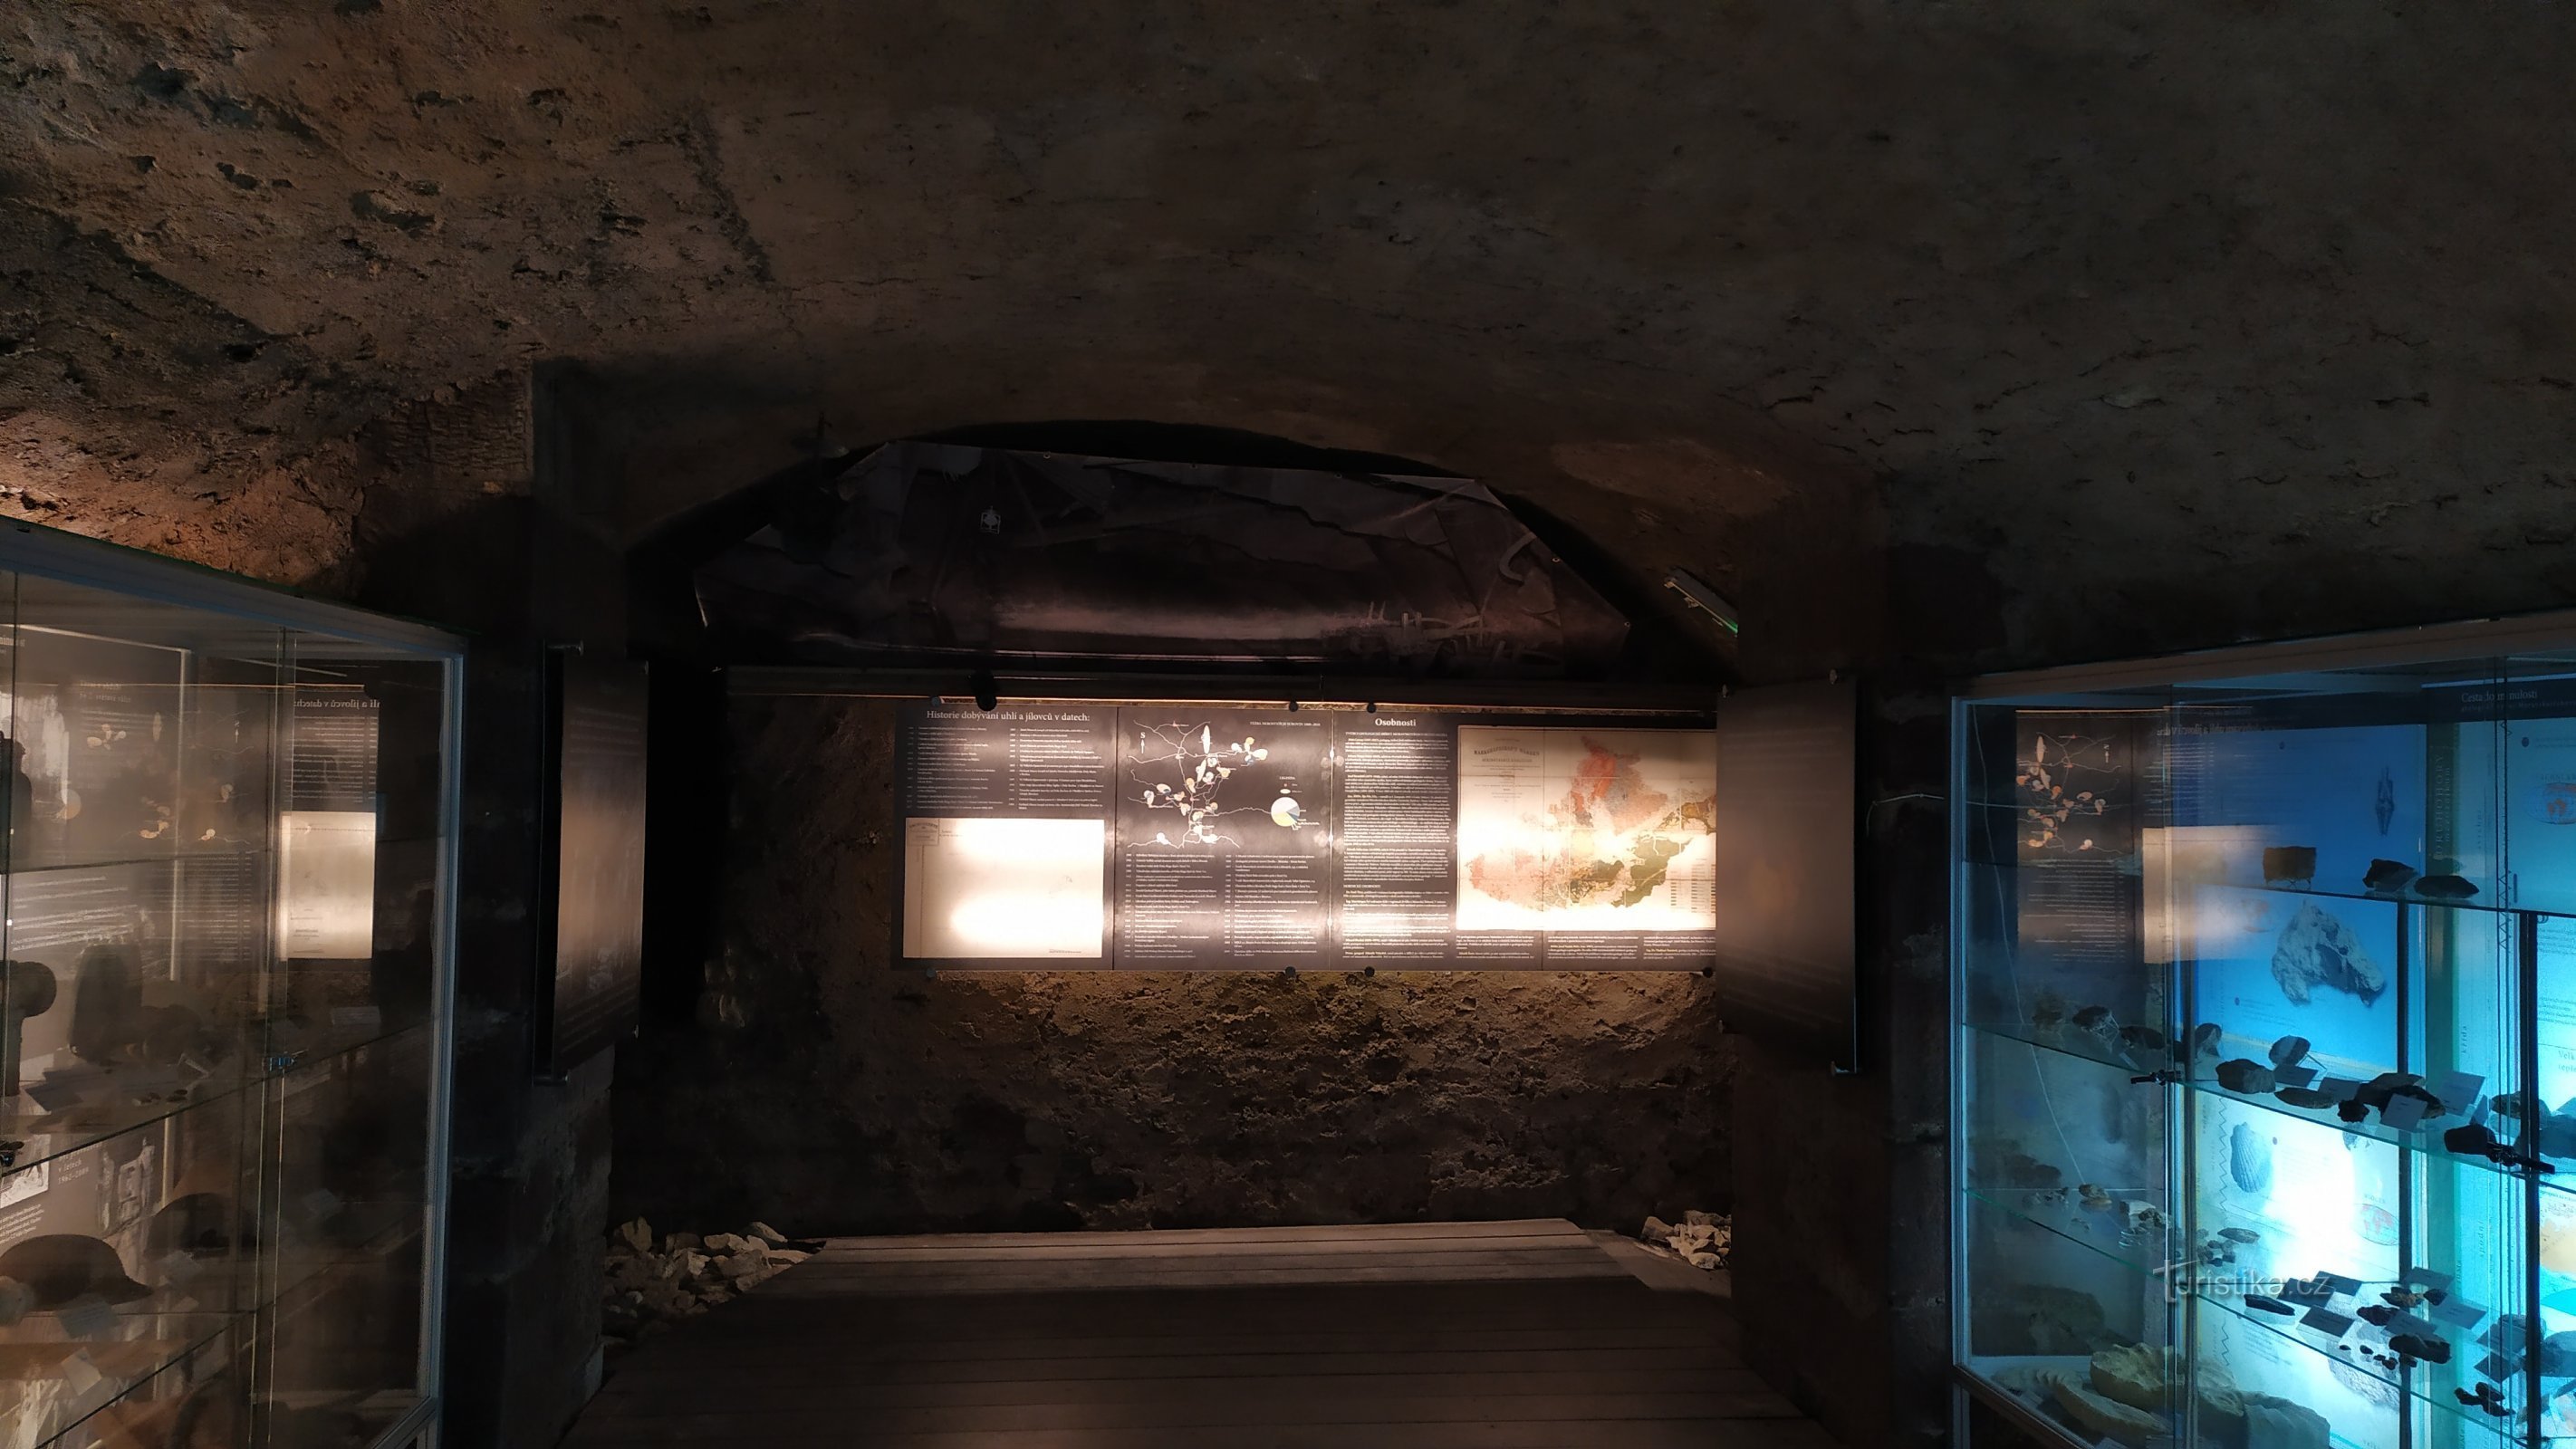 De tentoonstelling bevindt zich in de overblijfselen van de kelder van het oude kasteel